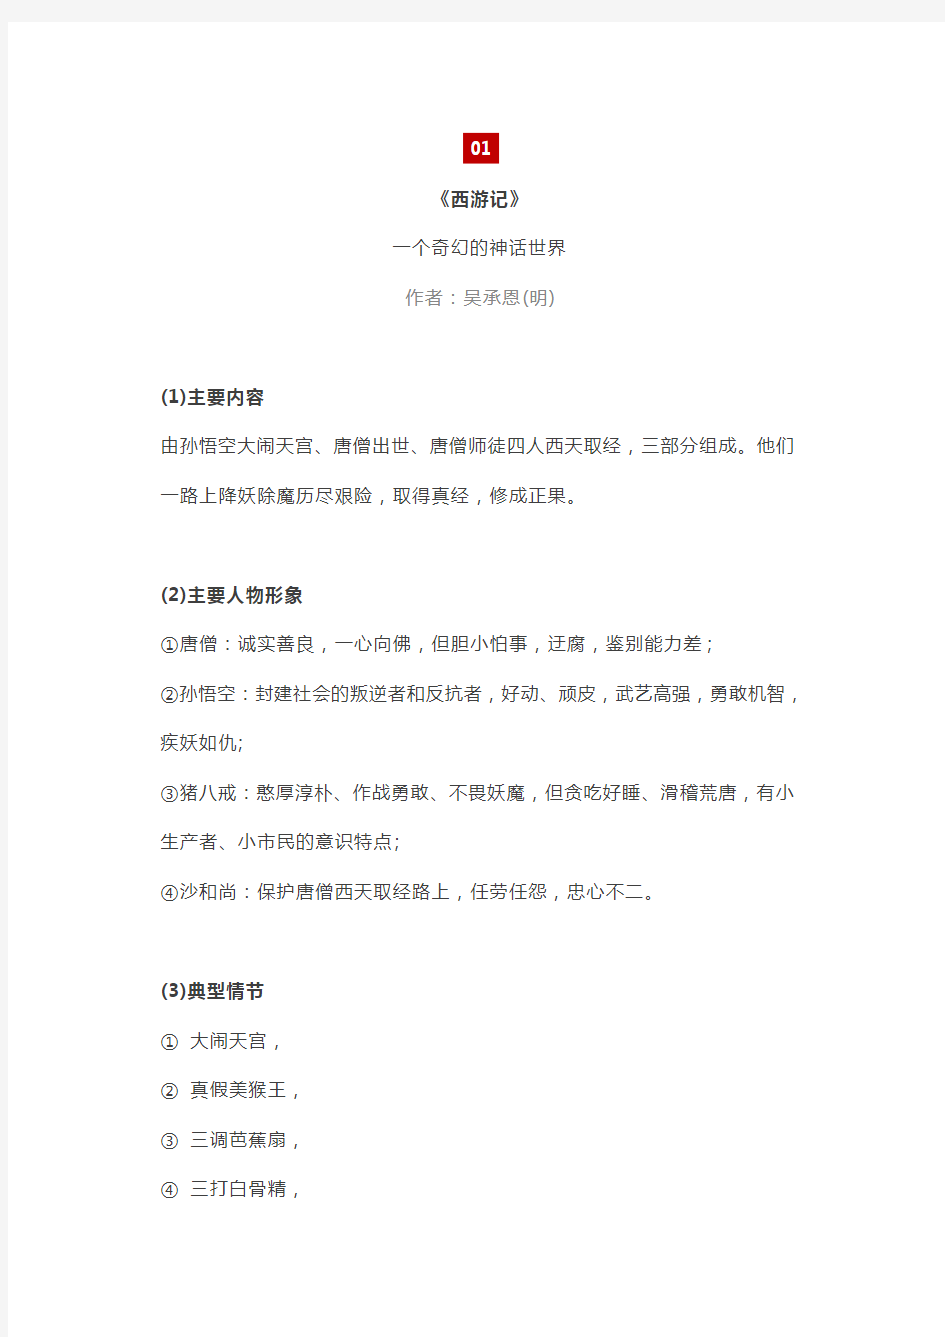 初中语文考纲中的6本名著导读资料